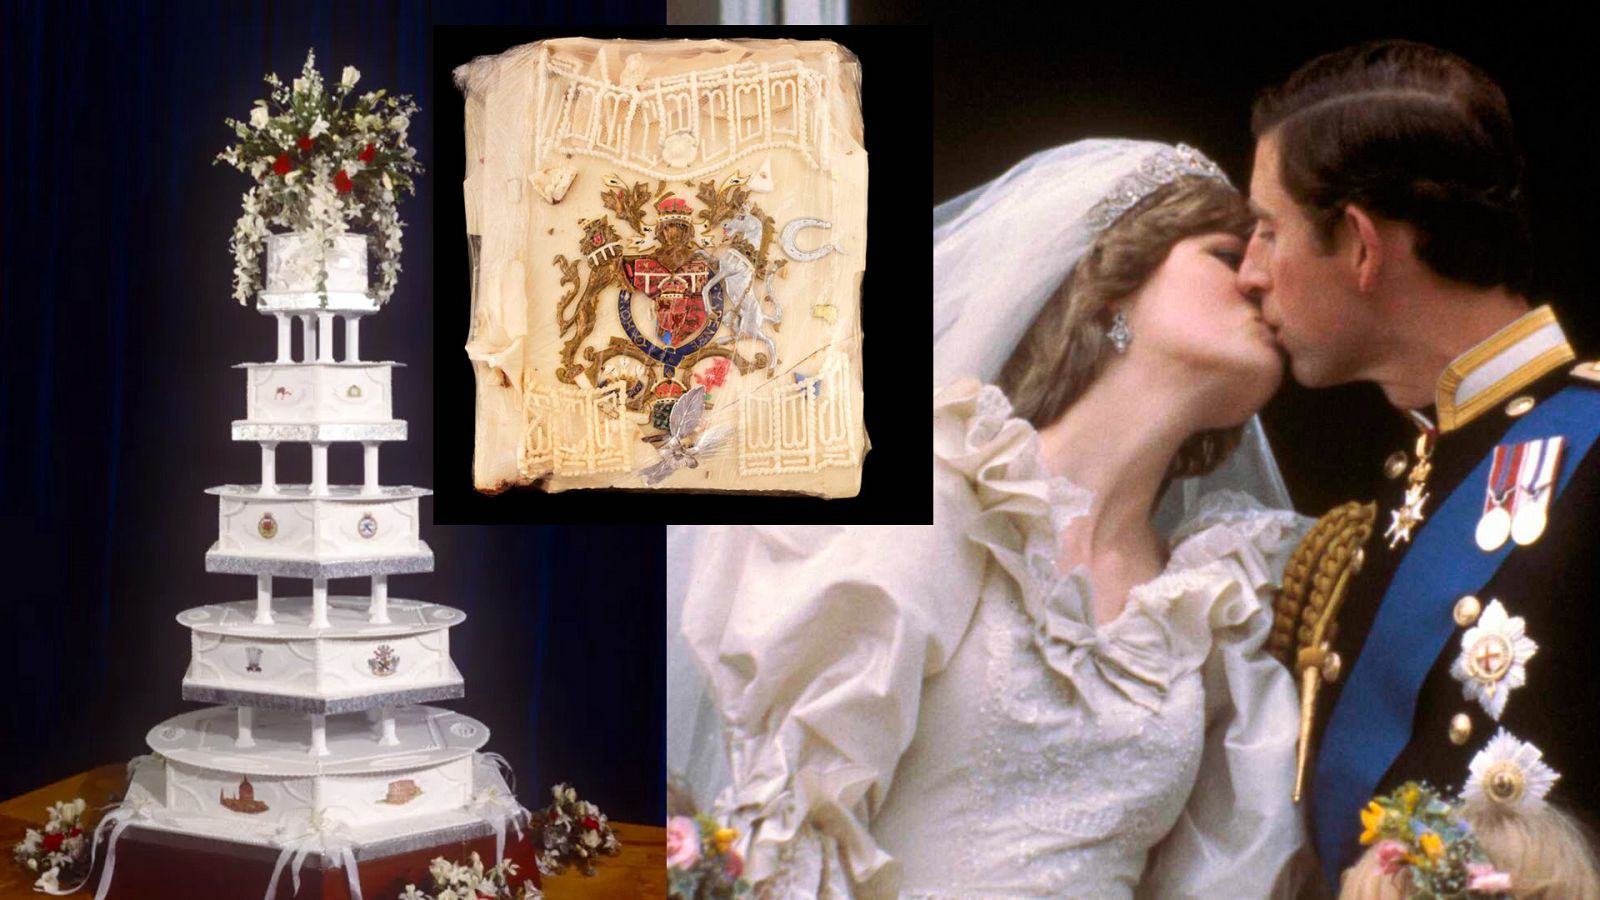 La boda de Diana y Carlos se celebró el 28 de julio de 1981 en Londres.